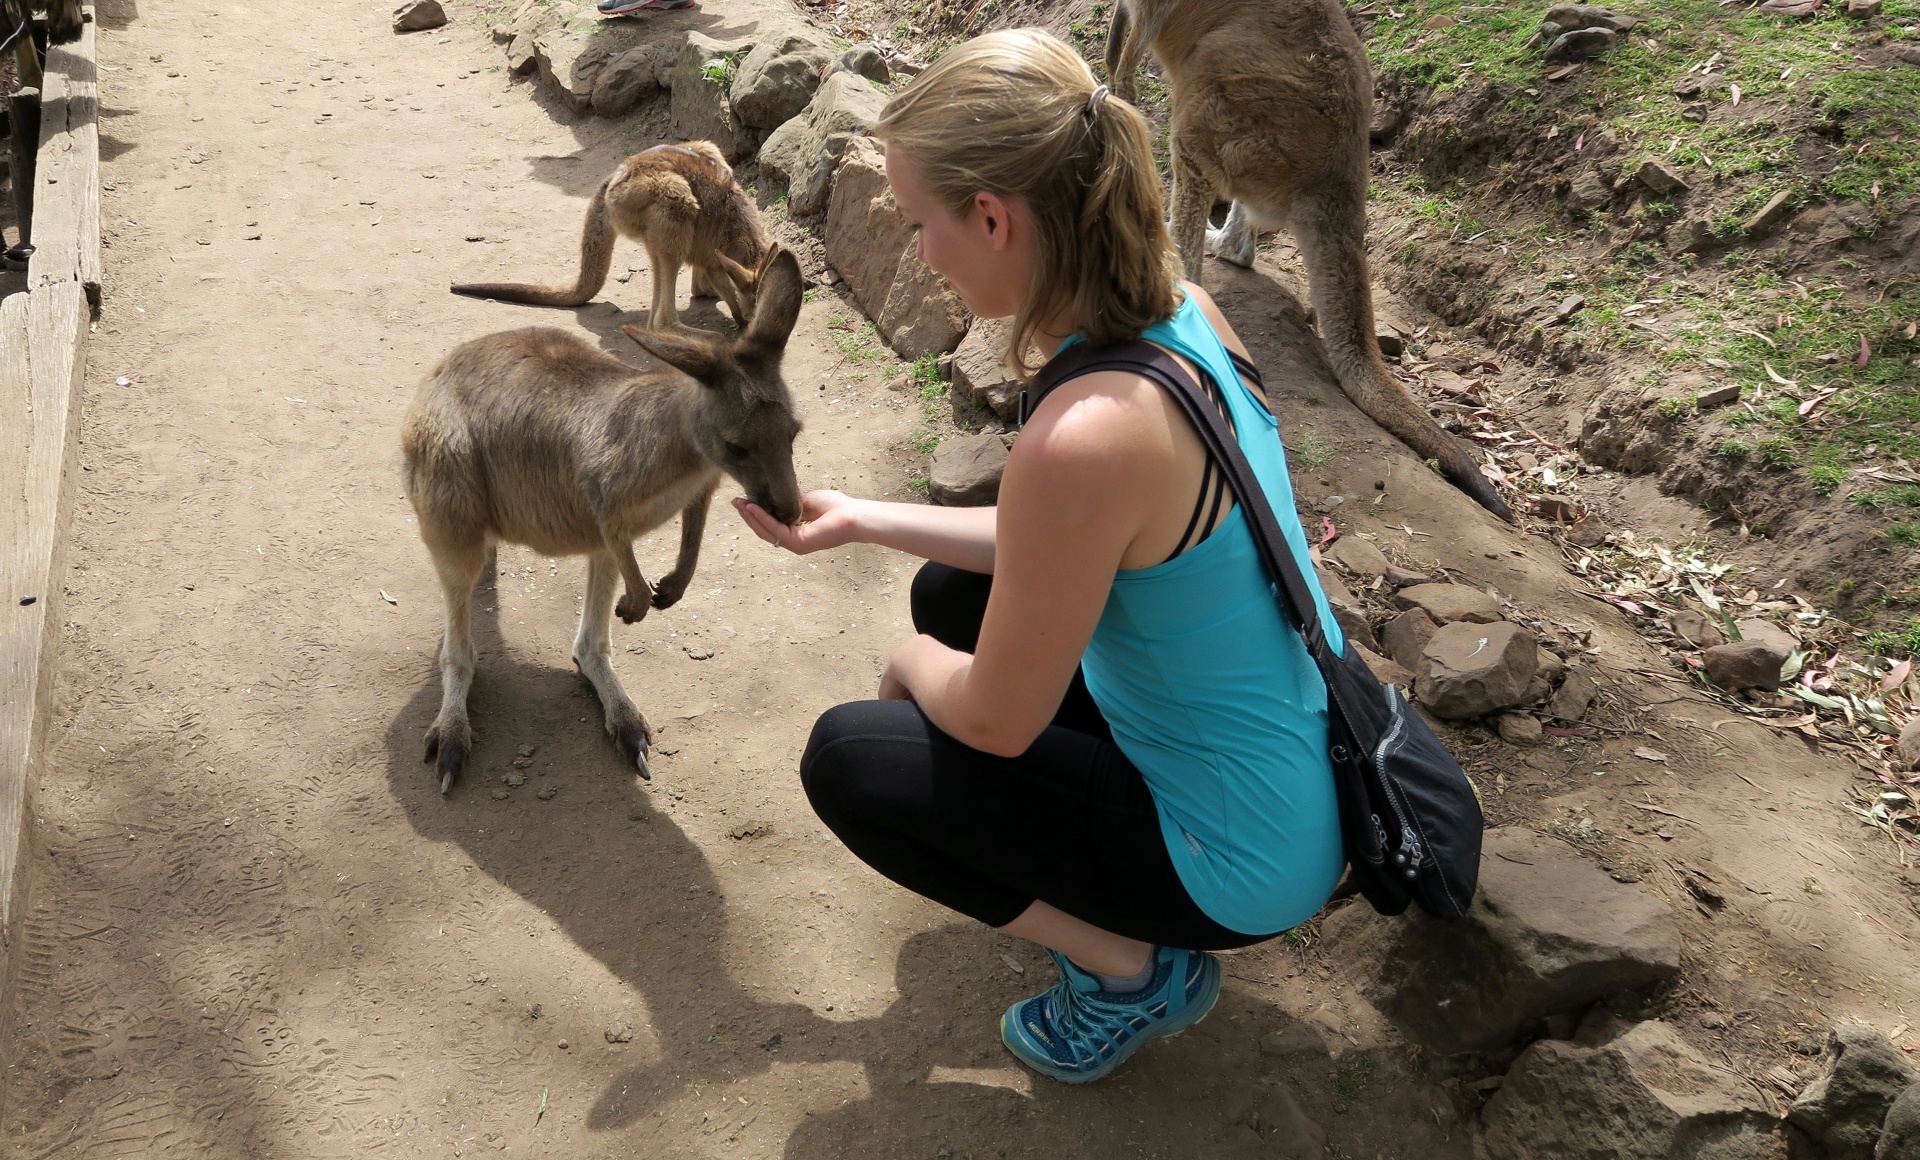 Feeding Kangaroos